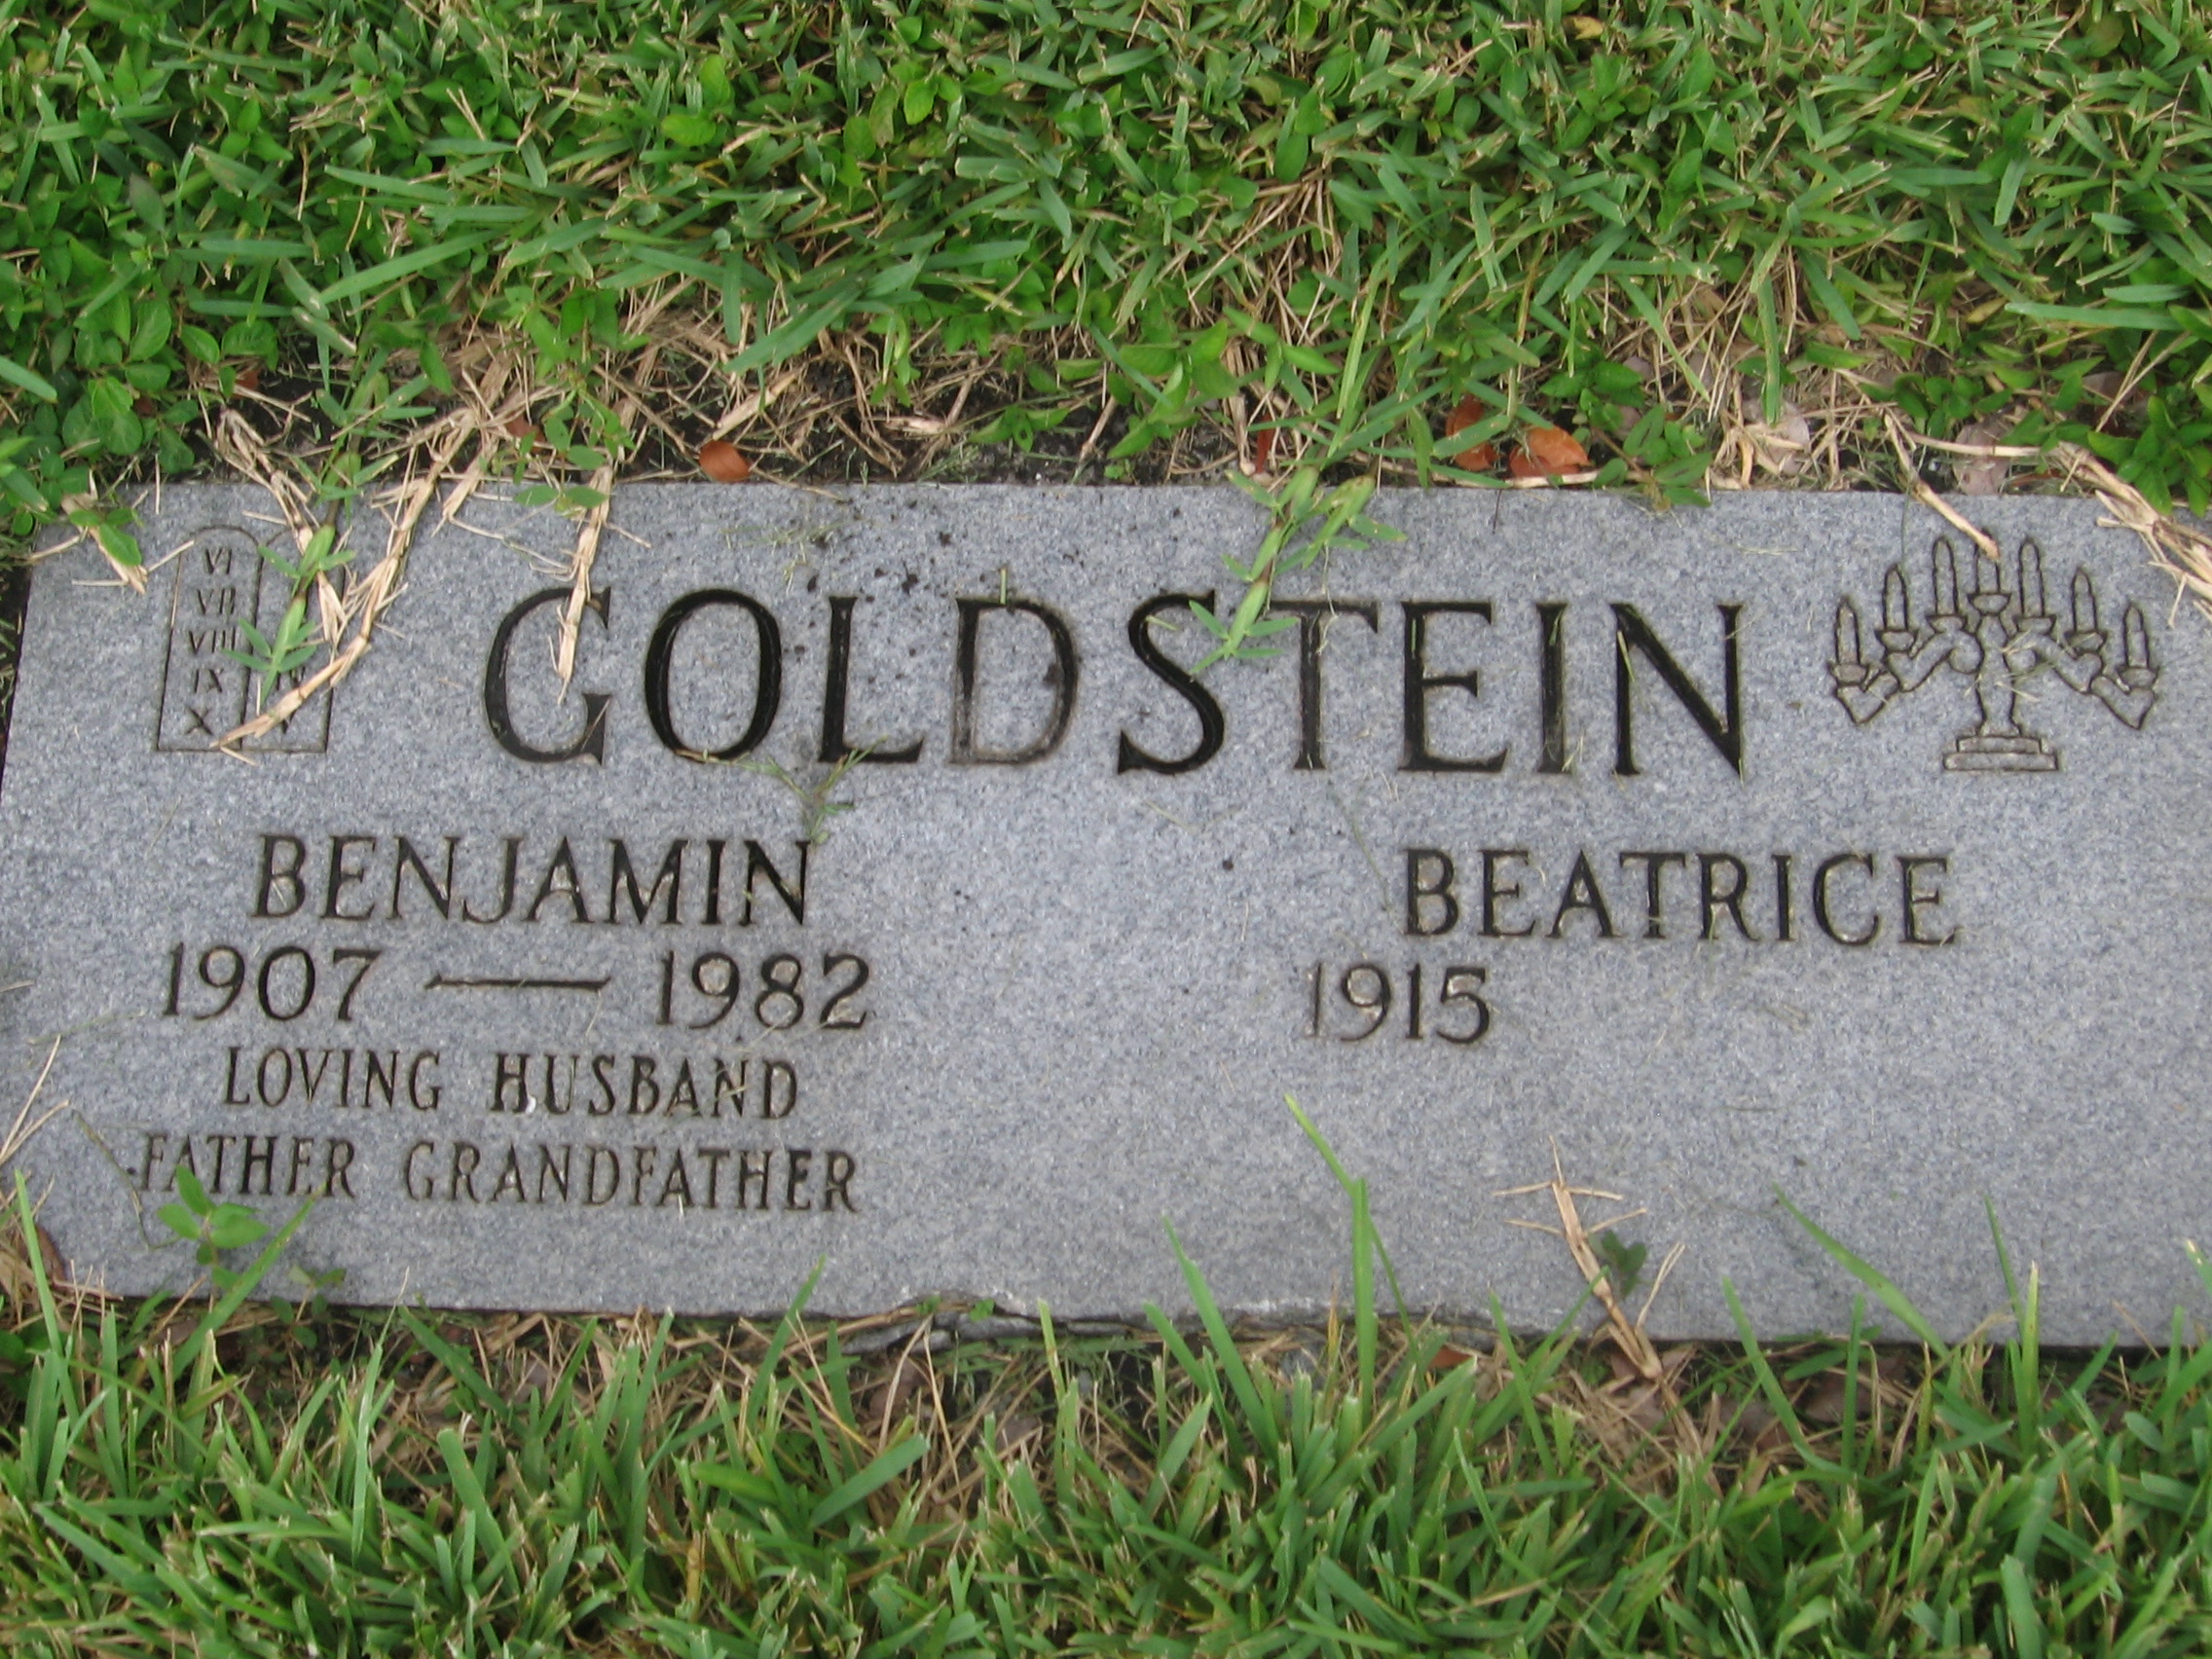 Beatrice Goldstein